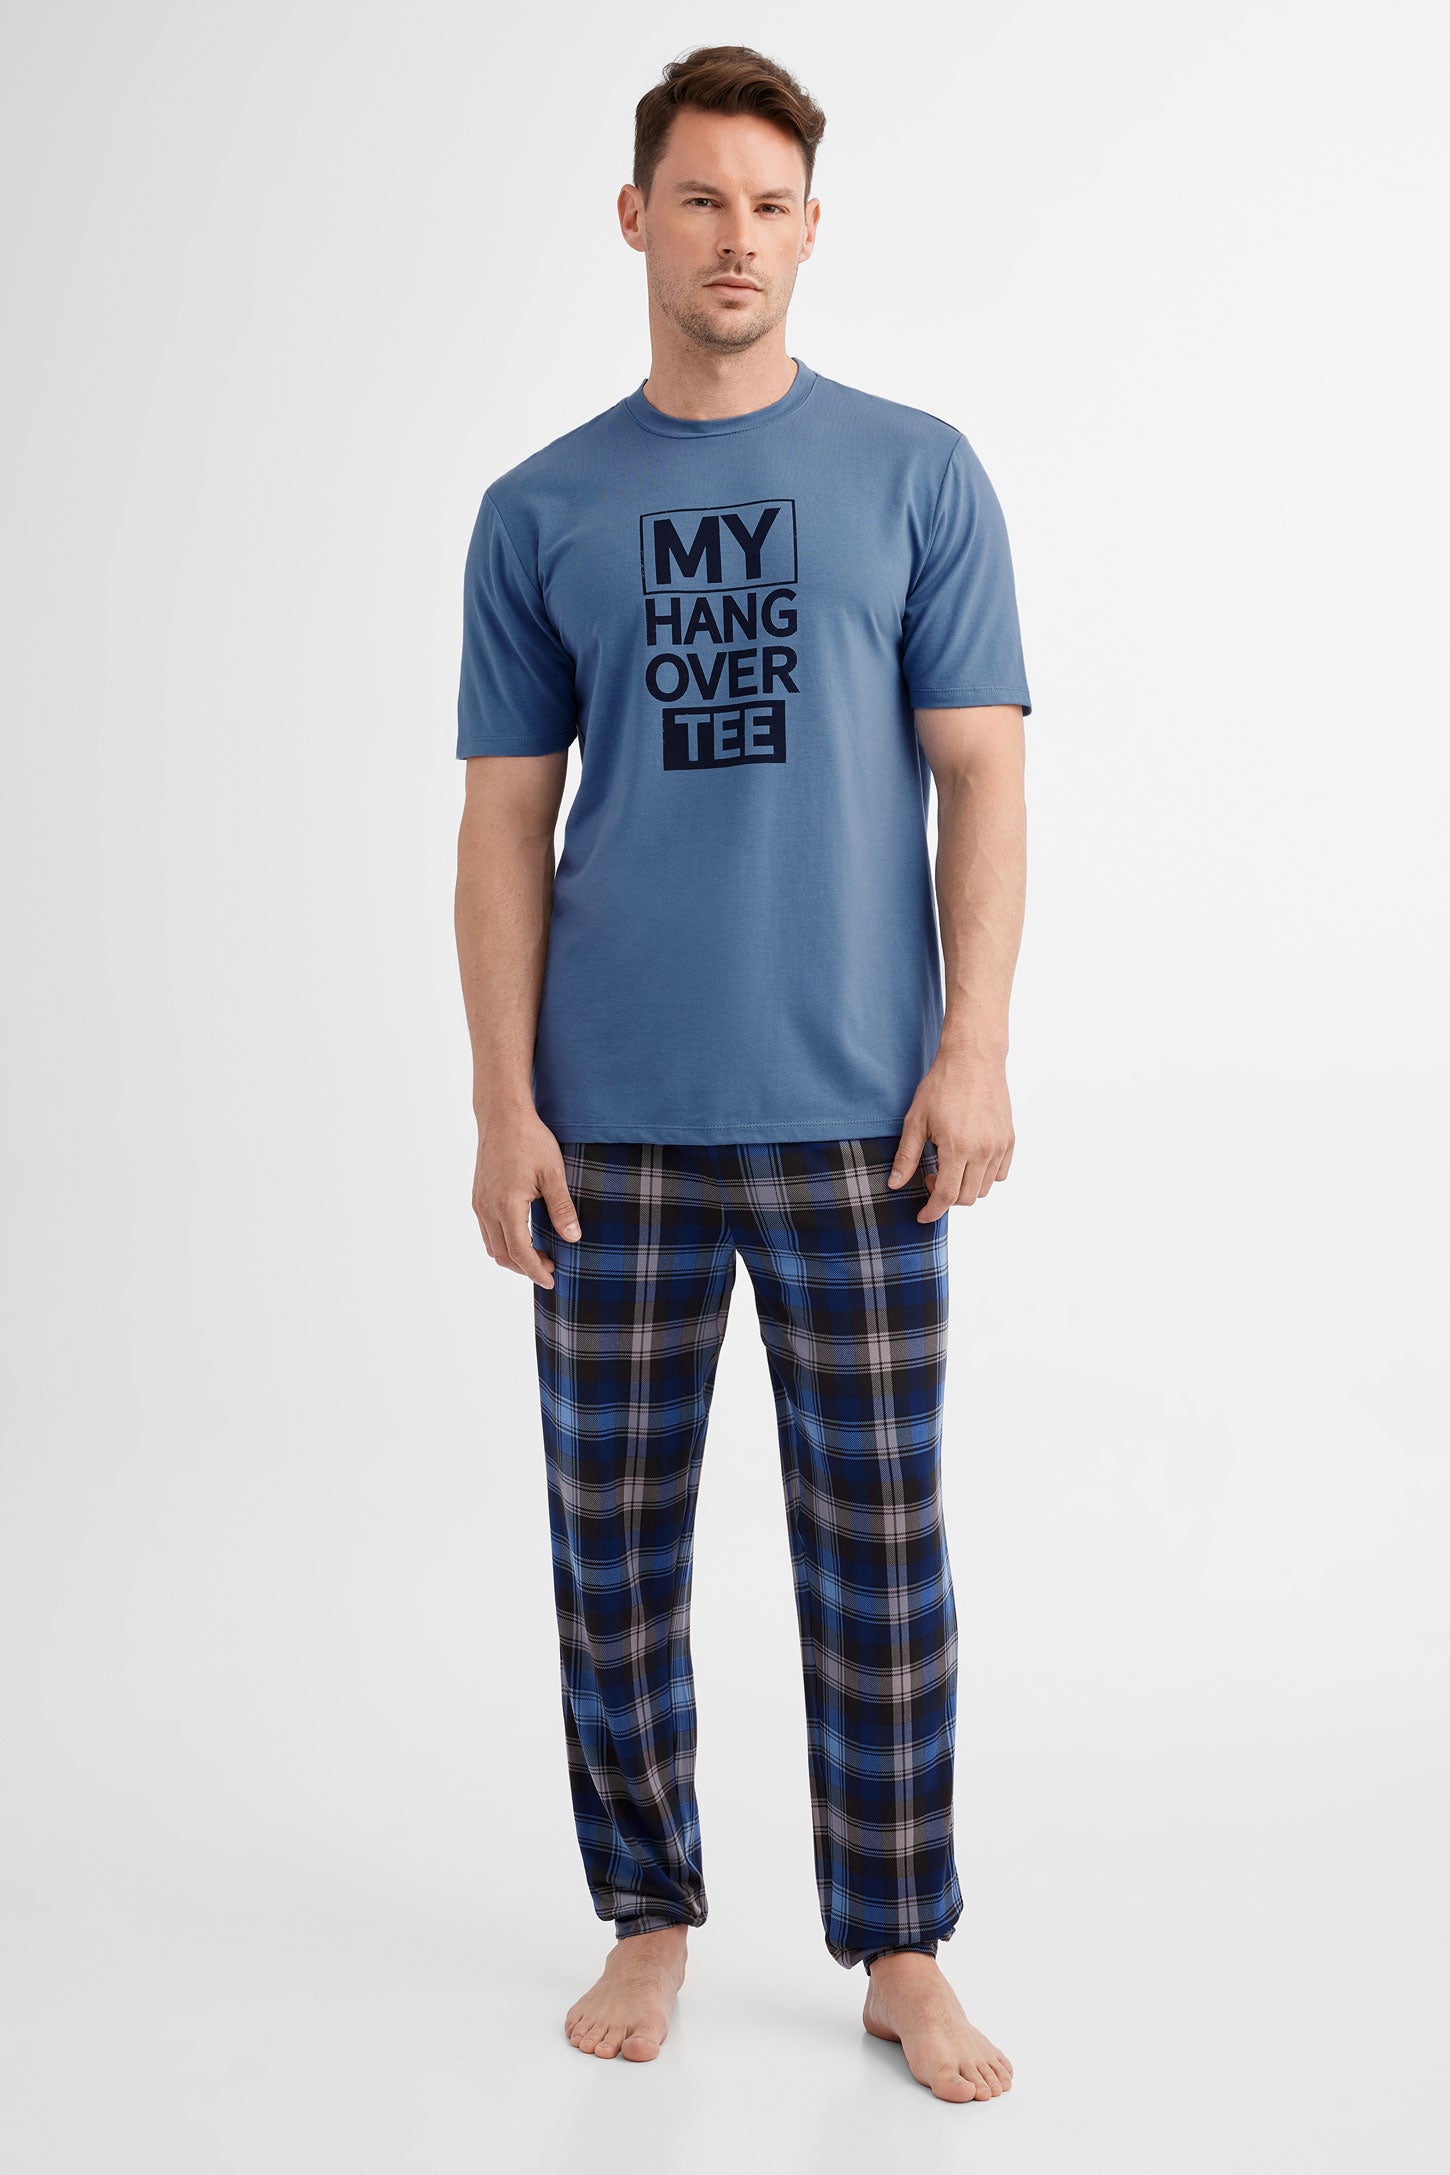 Duos futés, T-shirt pyjama en Modal, 2/40$ - Homme && BLEU